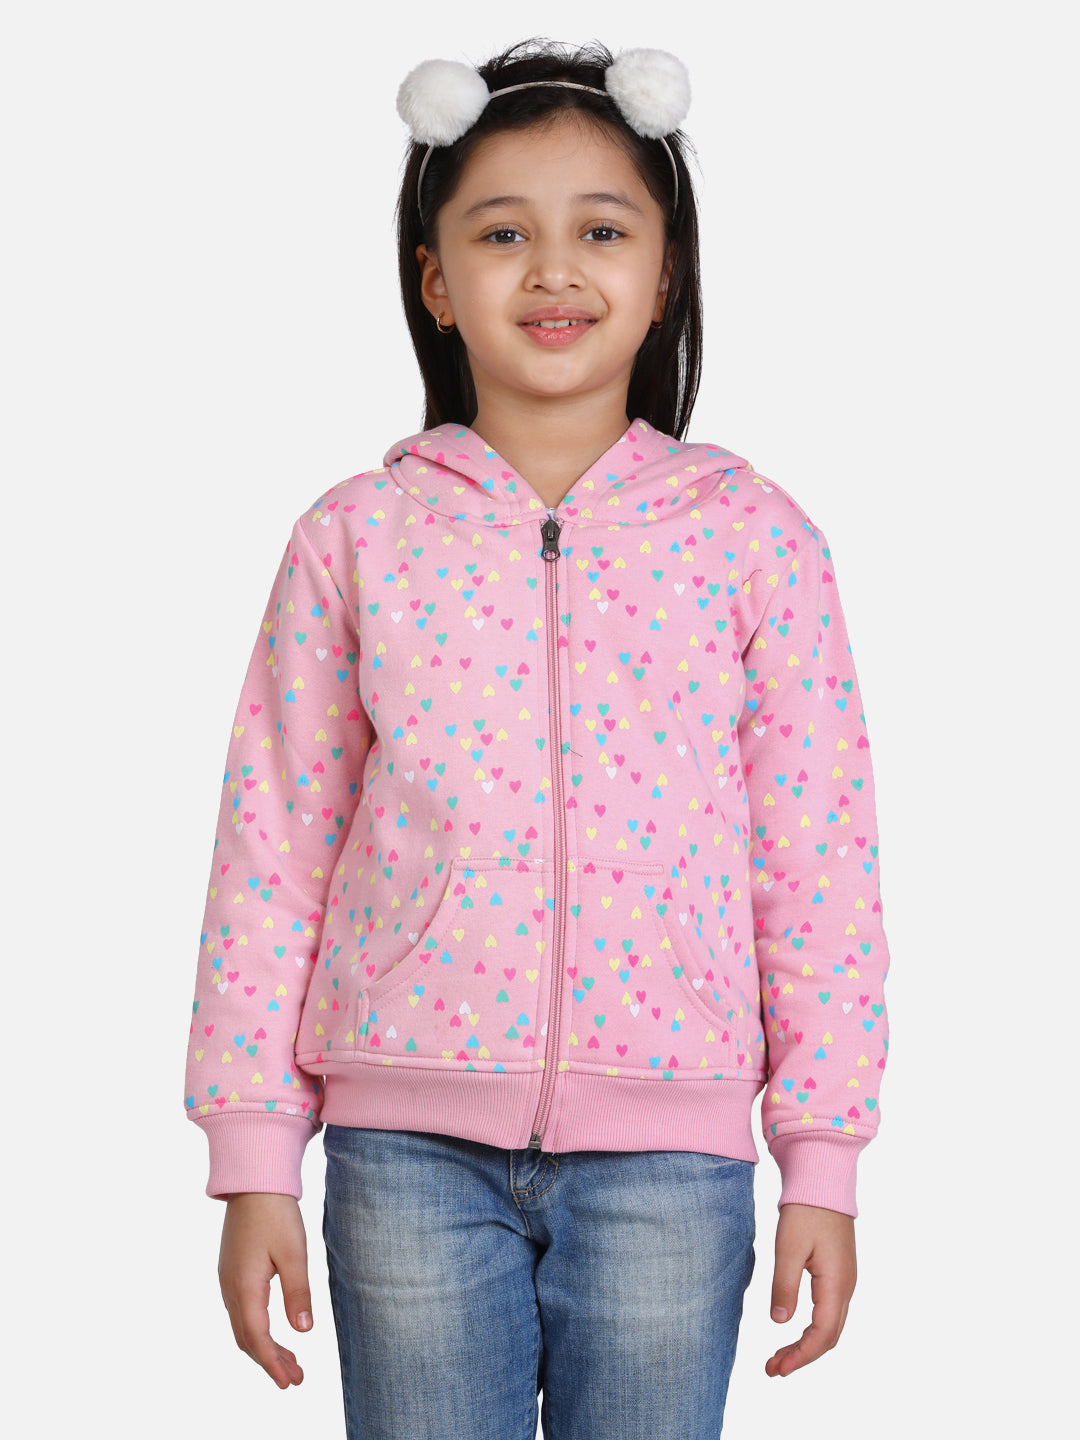 Girl's  Navy  Heart Printed Jacket With Hoodie - StyleStone Kid